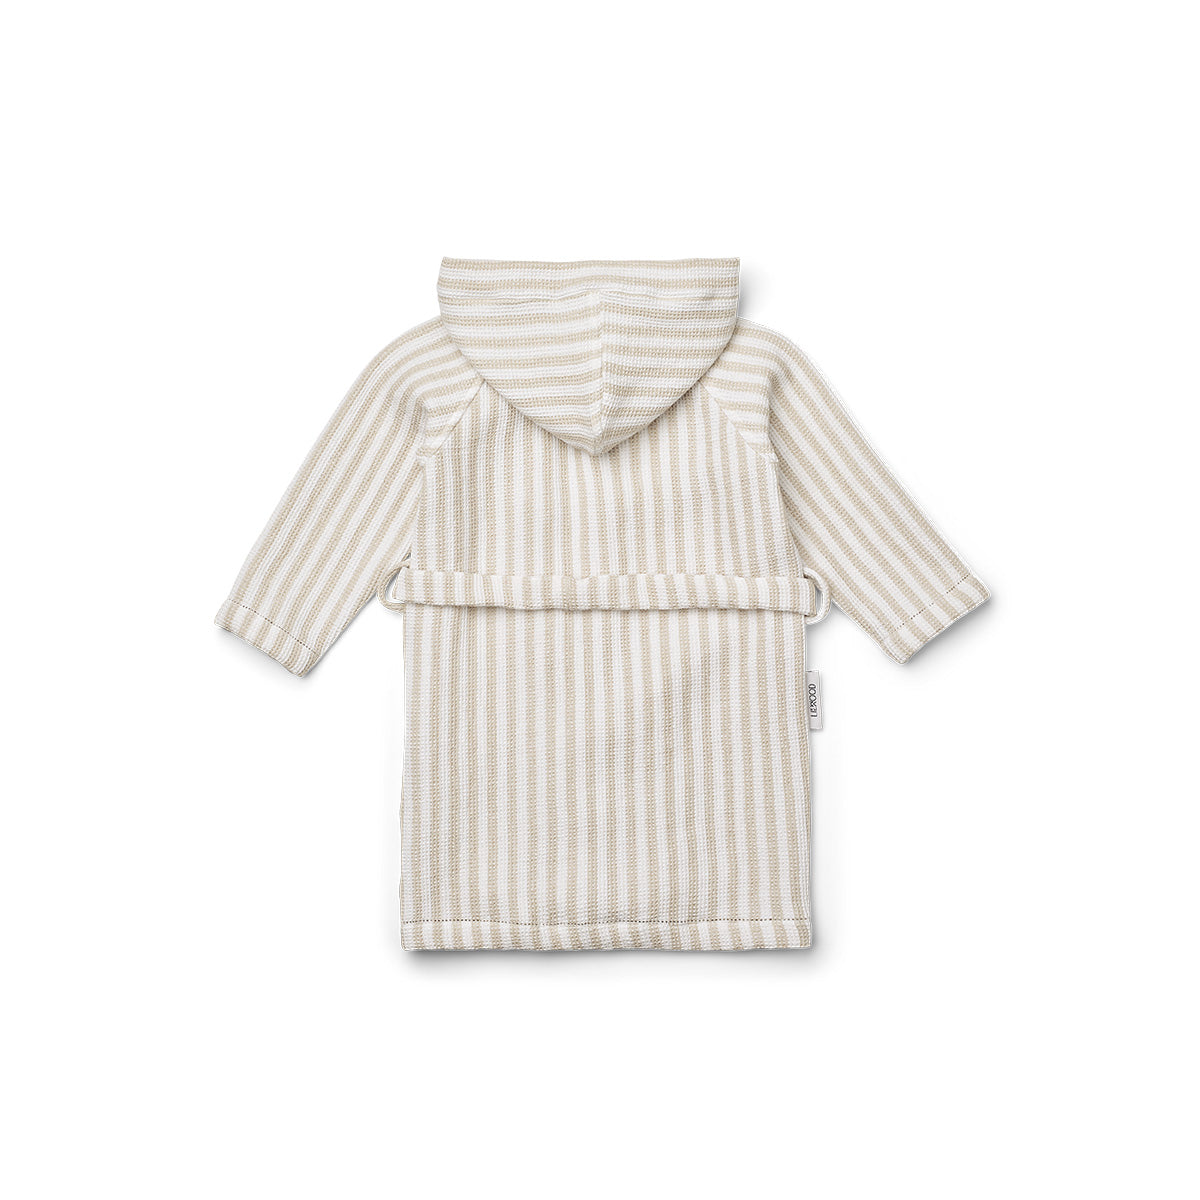 De zachte gestreepte badjas gray stripes crisp white/sandy van Liewood met bindriem en capuchon is een echte eyecatcher. Houdt jouw kindje droog, warm en comfortabel. Verkrijgbaar in verschillende maten. VanZus